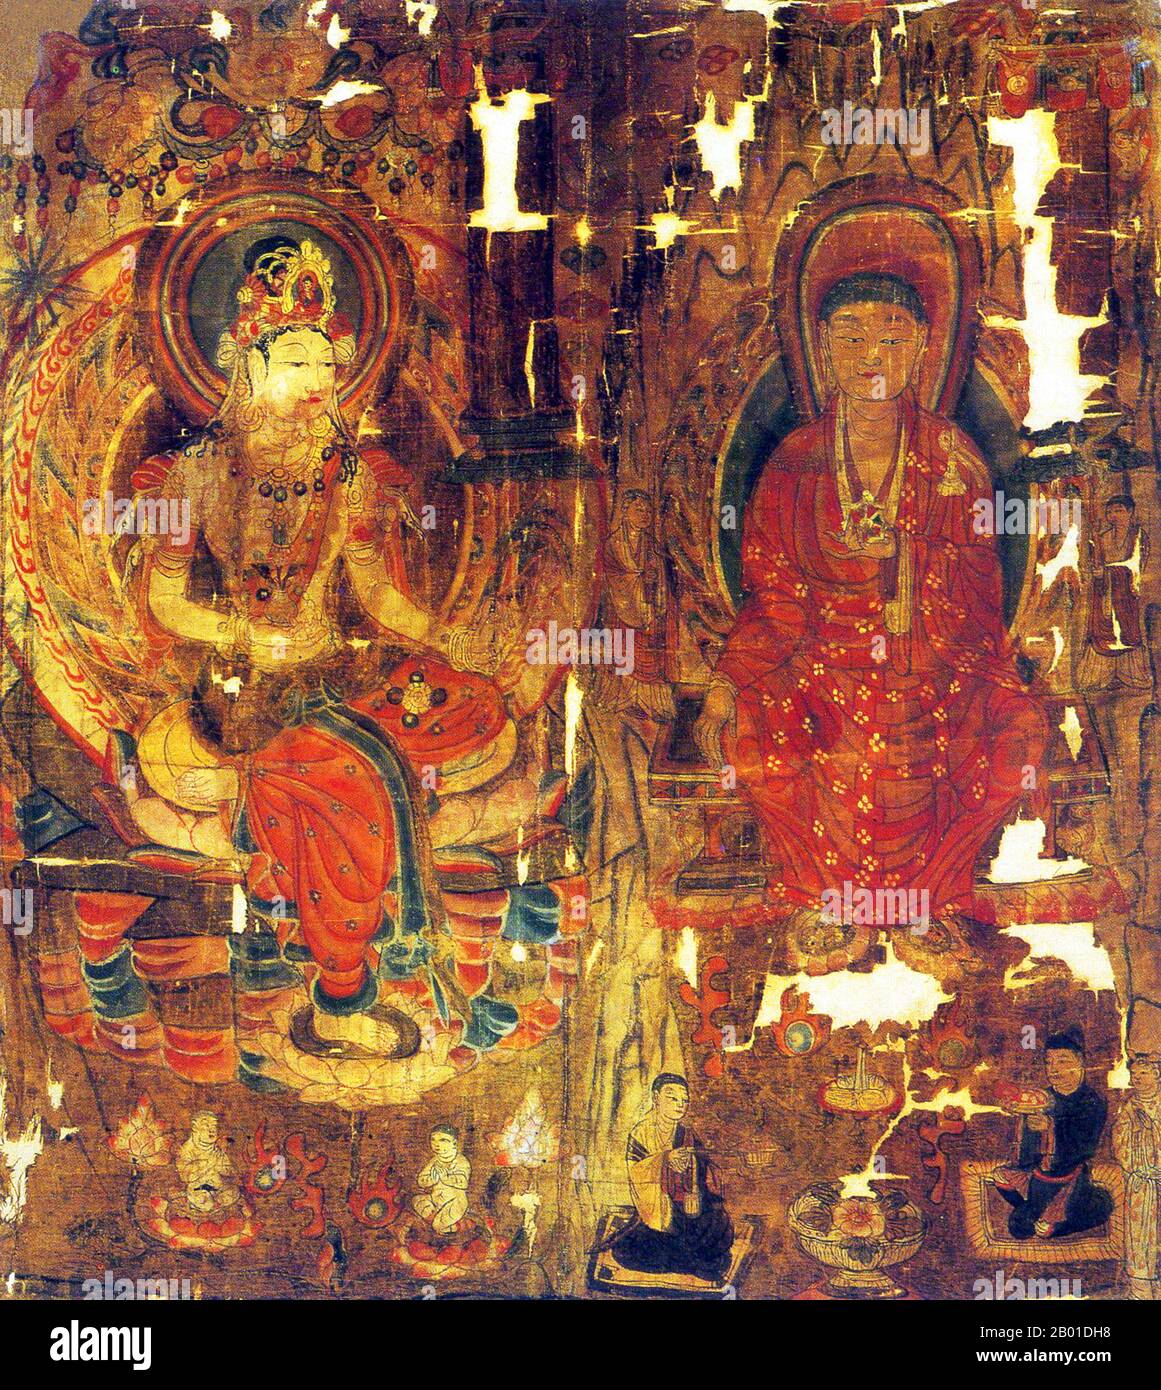 China: Guanyin "Göttin der Barmherzigkeit" und eine Bodhisattva mit Mönchen und Gläubigen, Seidenmalerei, Mogao-Höhlen, Dunhuang, Zeitraum der fünf Dynastien (907-960 CE). Die Mogao-Höhlen oder Mogao-Grotten (Chinesisch: mògāo kū, auch bekannt als die Höhlen der Thousand Buddhas und Dunhuang Höhlen) bilden ein System von 492 Tempeln 25 km (15,5 Meilen) südöstlich des Zentrums von Dunhuang, eine Oase, die strategisch an einer religiösen und kulturellen Kreuzung auf der Seidenstraße in der Provinz Gansu, China, gelegen ist. Die Höhlen enthalten einige der schönsten Beispiele buddhistischer Kunst über einen Zeitraum von 1.000 Jahren. Stockfoto